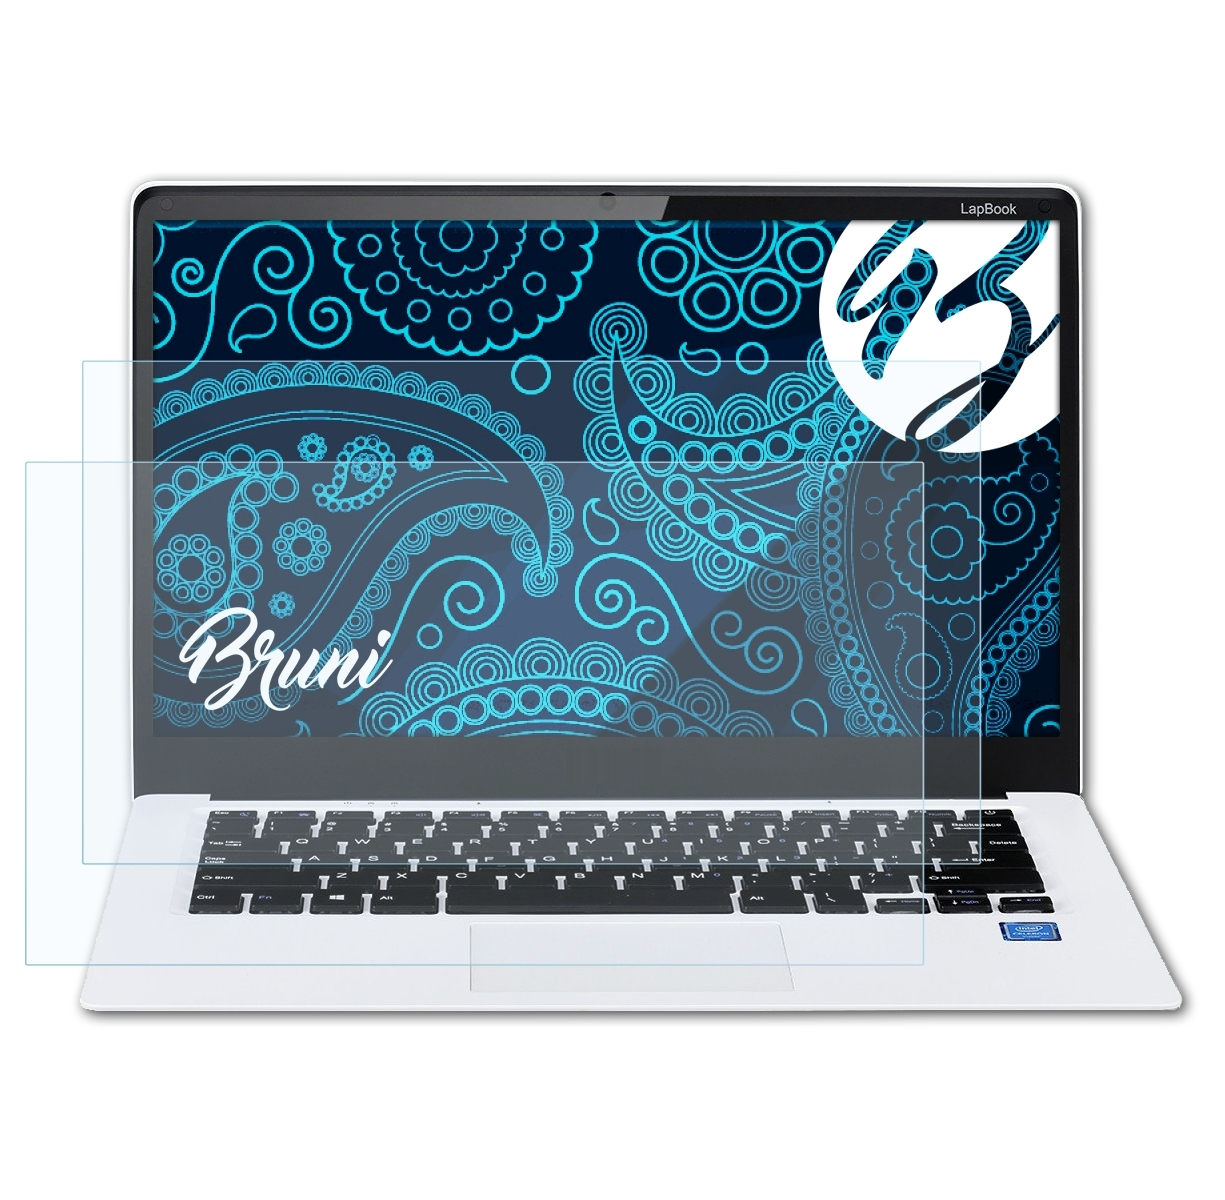 2x Chuwi LapBook Schutzfolie(für BRUNI 14,1) Basics-Clear